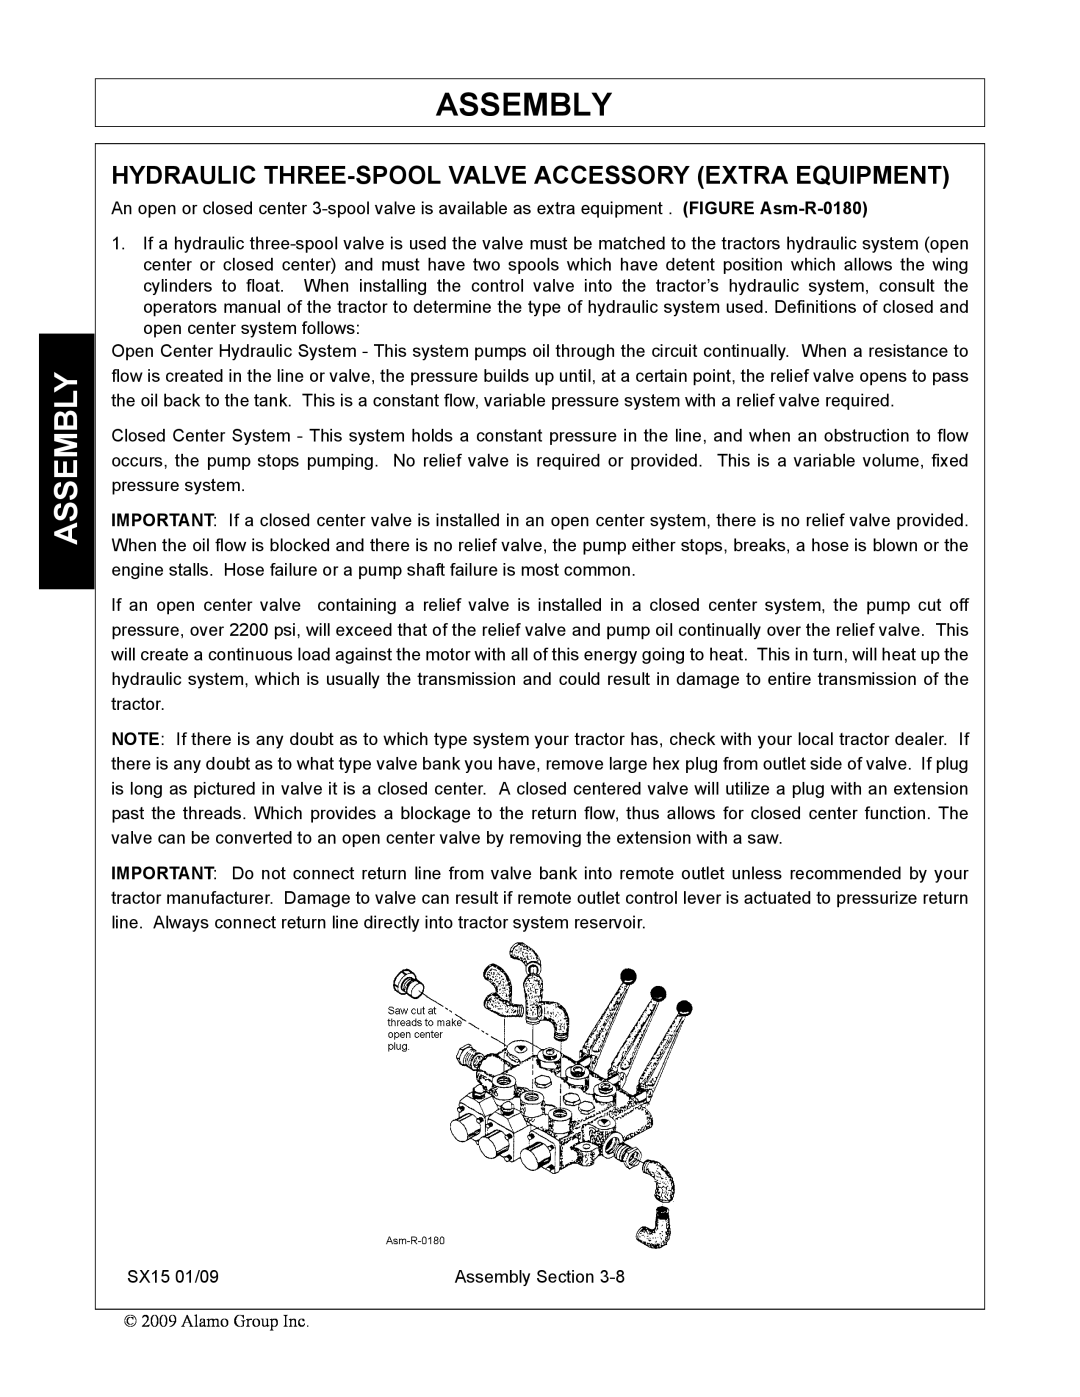 Alamo SX15 manual Hydraulic Three-Spool Valve Accessory Extra Equipment, Assembly 